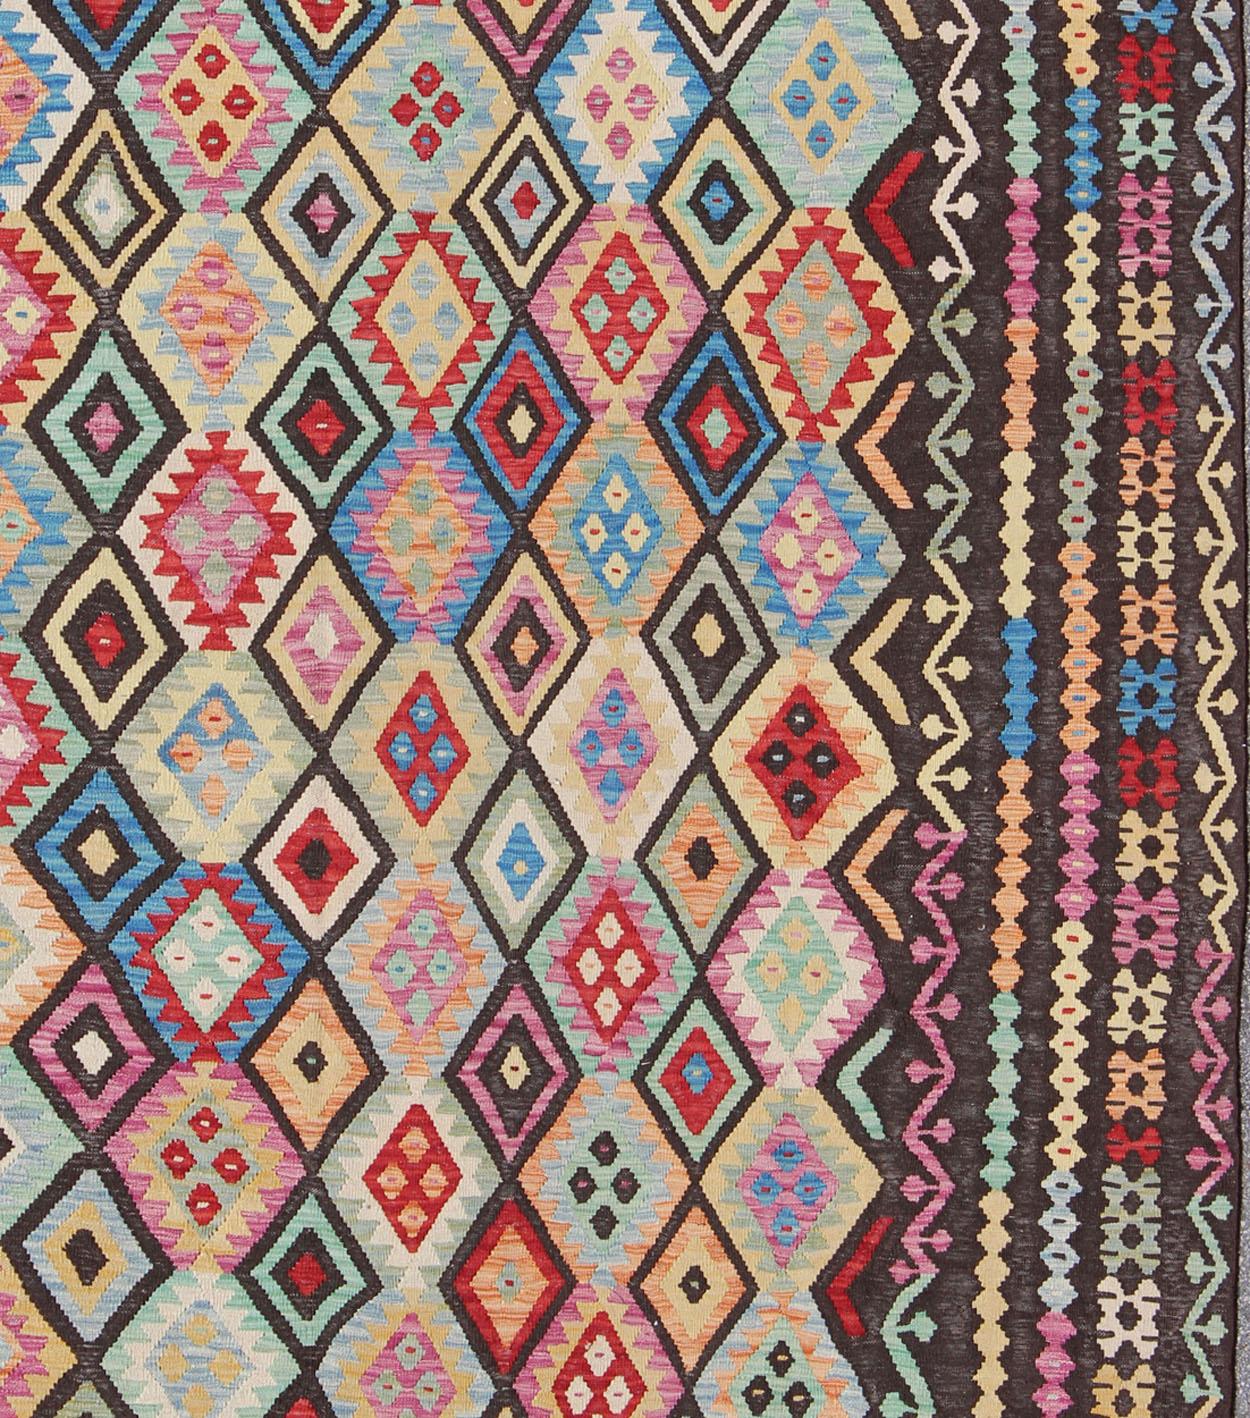 Kilim Vintage Tribal coloré, tapis ABT-8120937, pays d'origine / type : Afghanistan / Kilim, vers la fin du 20ème siècle. Keivan Woven Arts, Tapis Kilim Afghan. 

Ce tapis kilim tissé à plat en provenance d'Afghanistan présente un motif géométrique